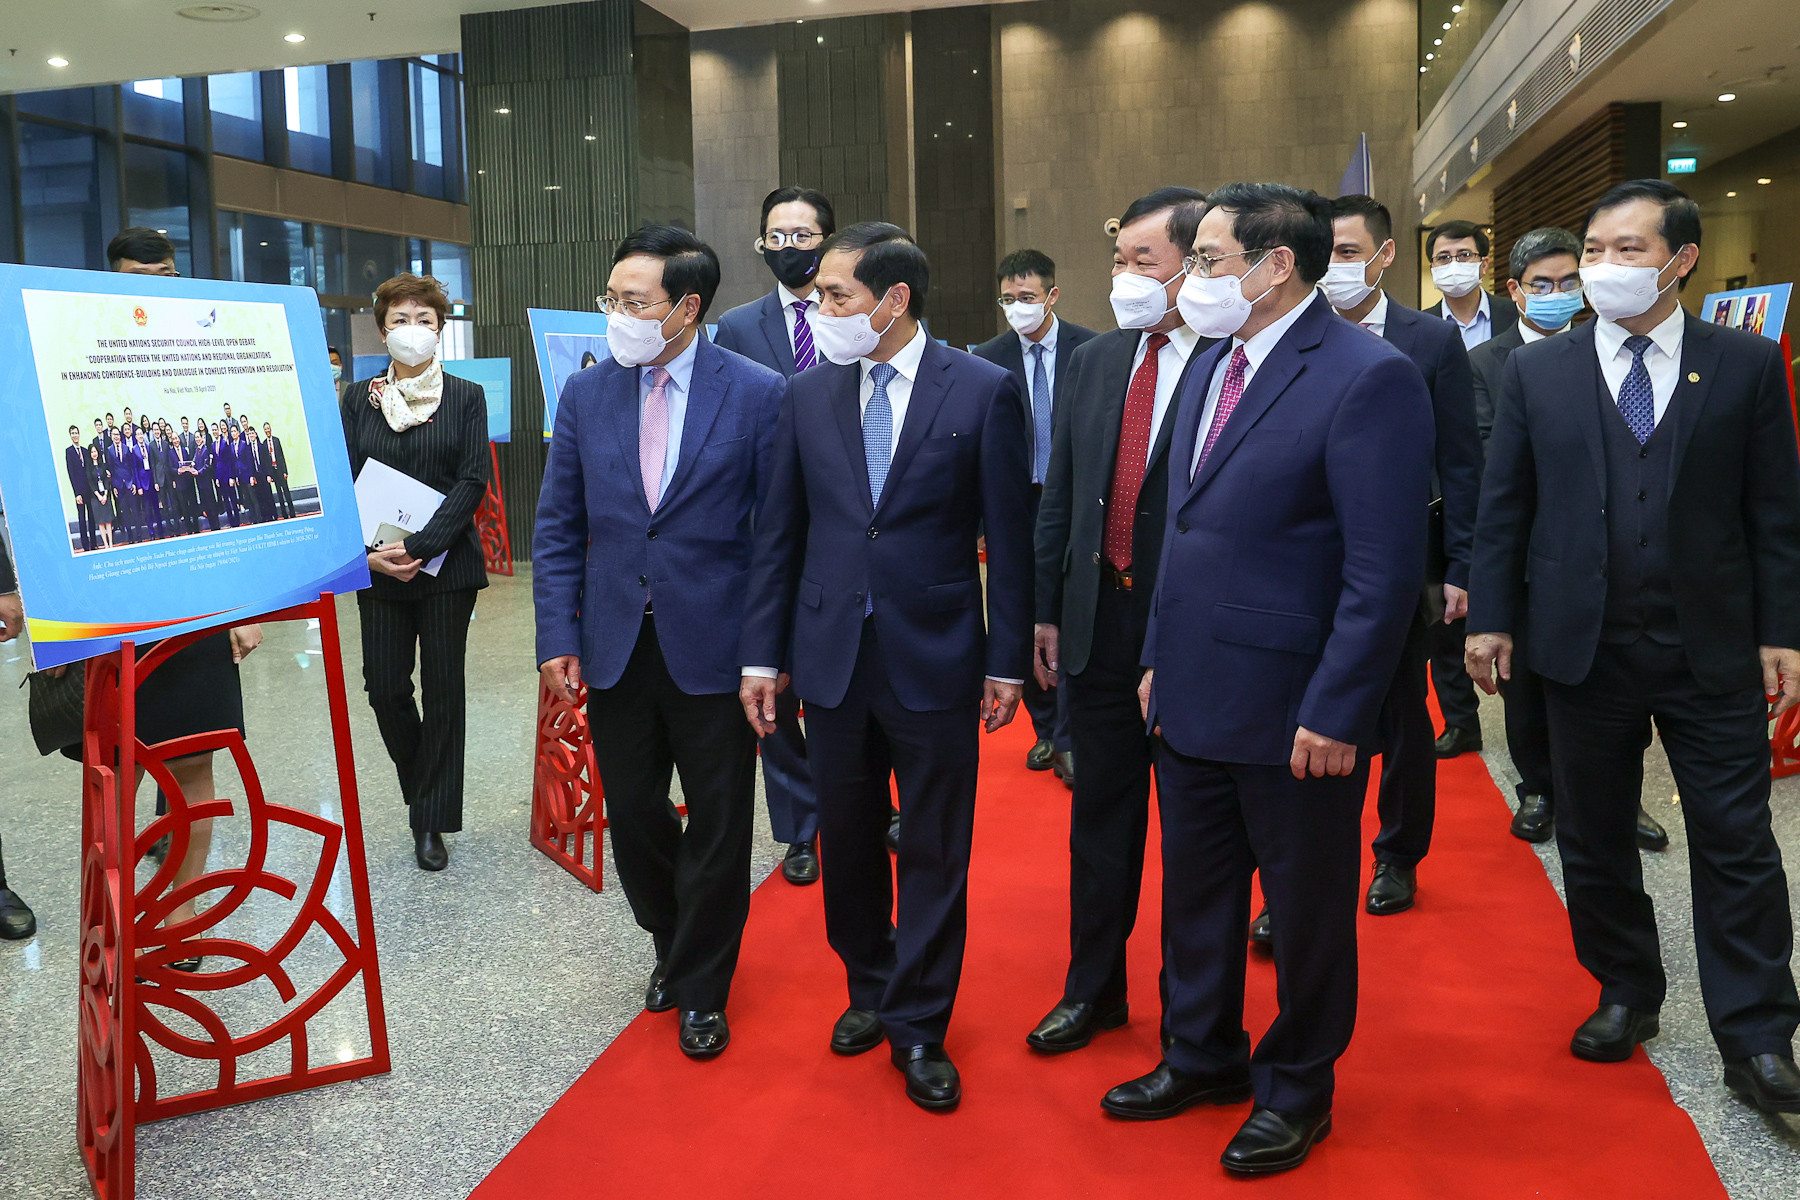 Chùm ảnh: Thủ tướng dự Hội nghị tổng kết 2 năm Việt Nam đảm nhiệm nhiệm vụ tại Hội đồng Bảo an LHQ - Ảnh 2.